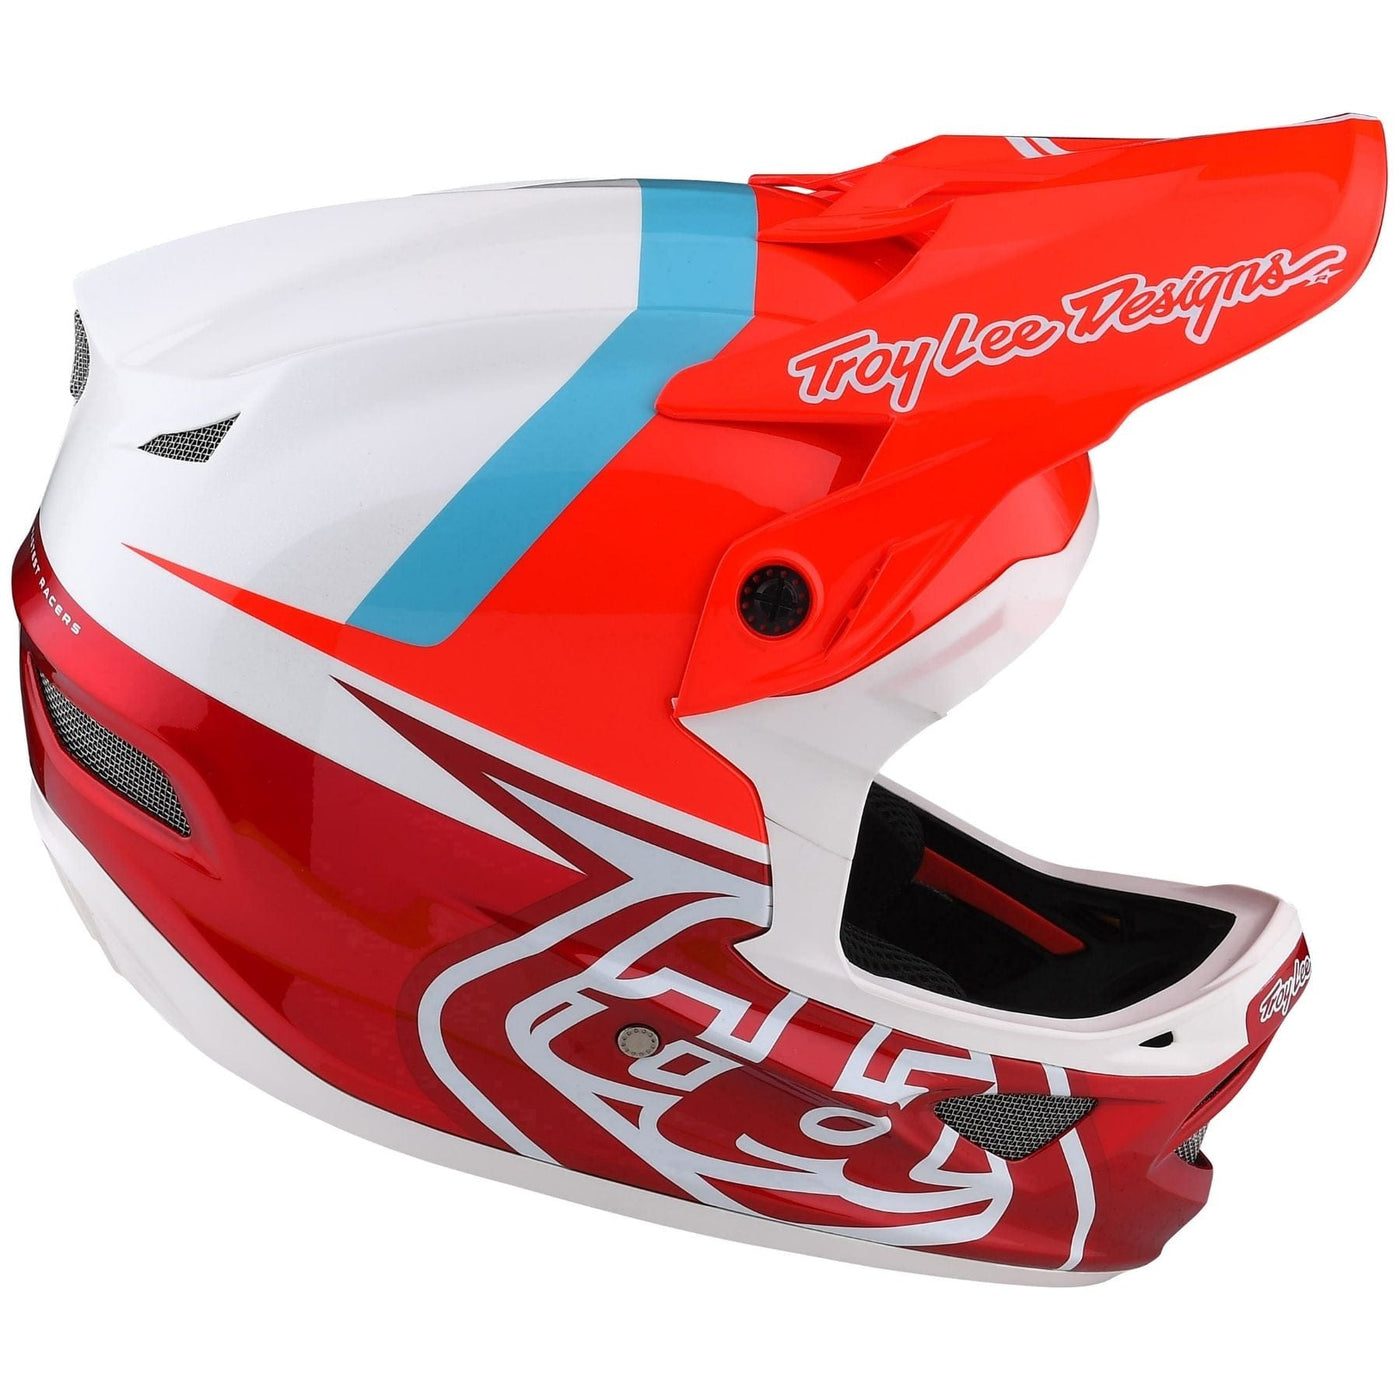 Troy Lee Designs full-face bike helmet - Red.